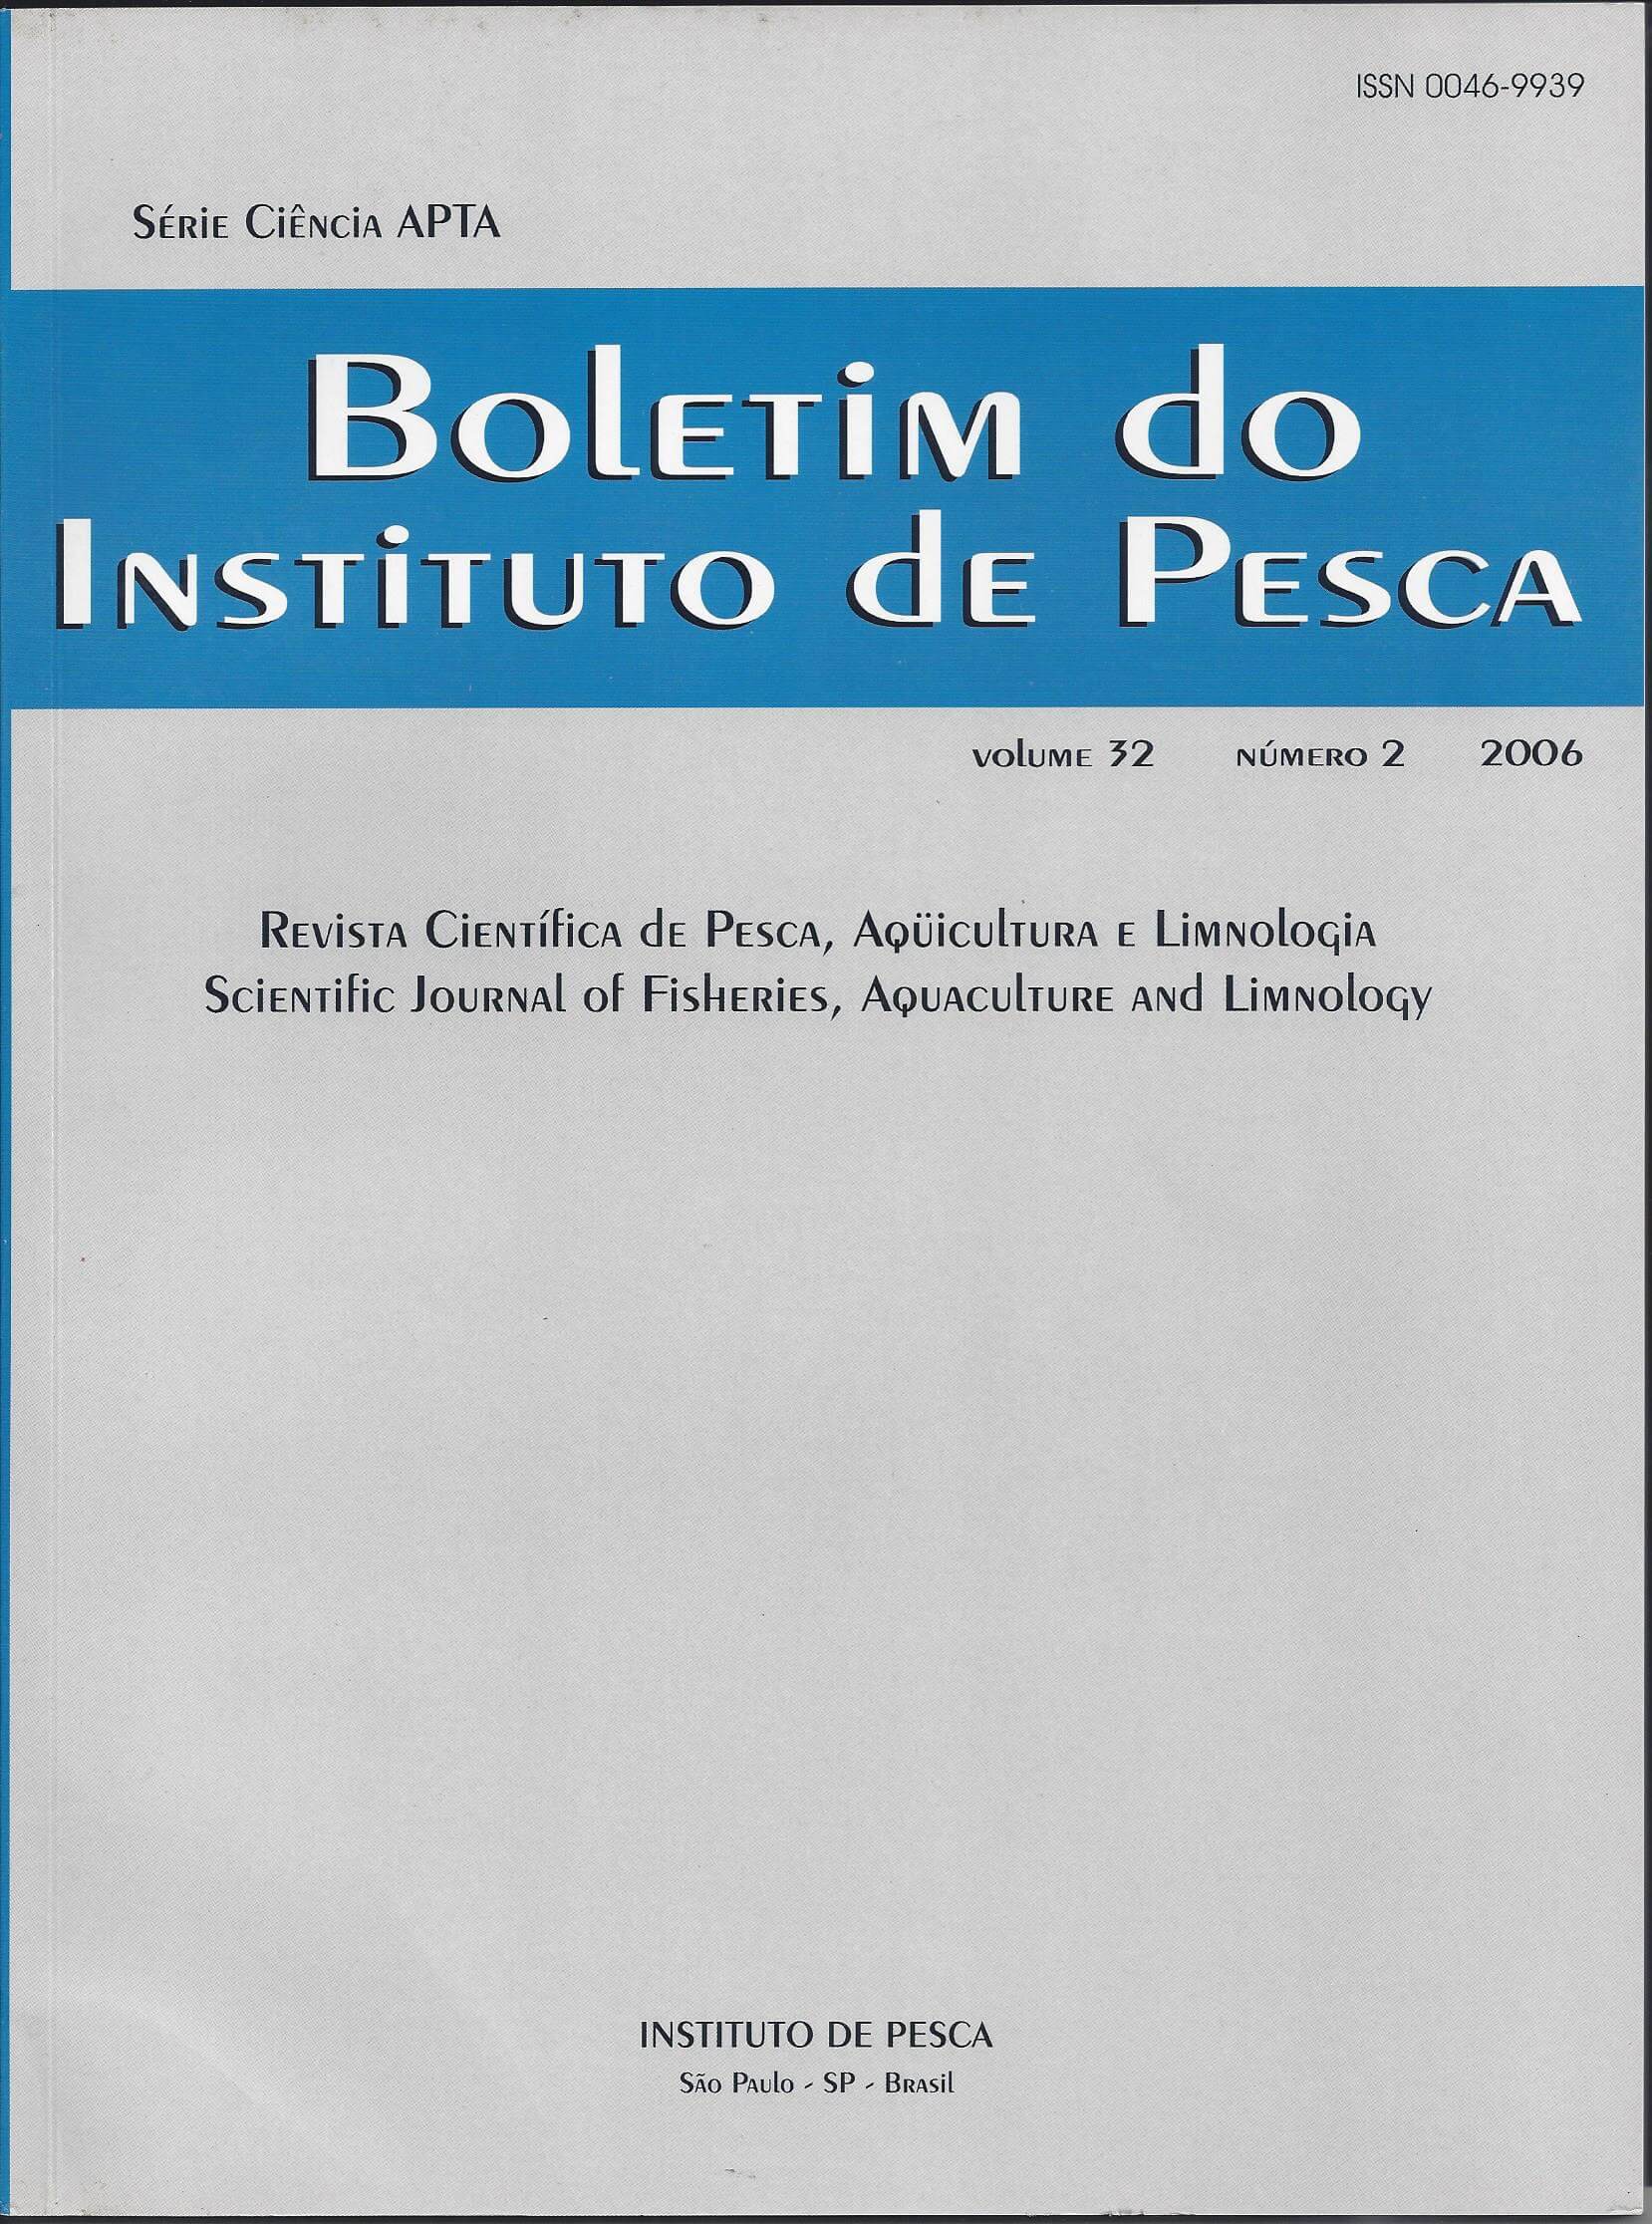 					Visualizar v. 32 n. 2 (2006): BOLETIM DO INSTITUTO DE PESCA
				